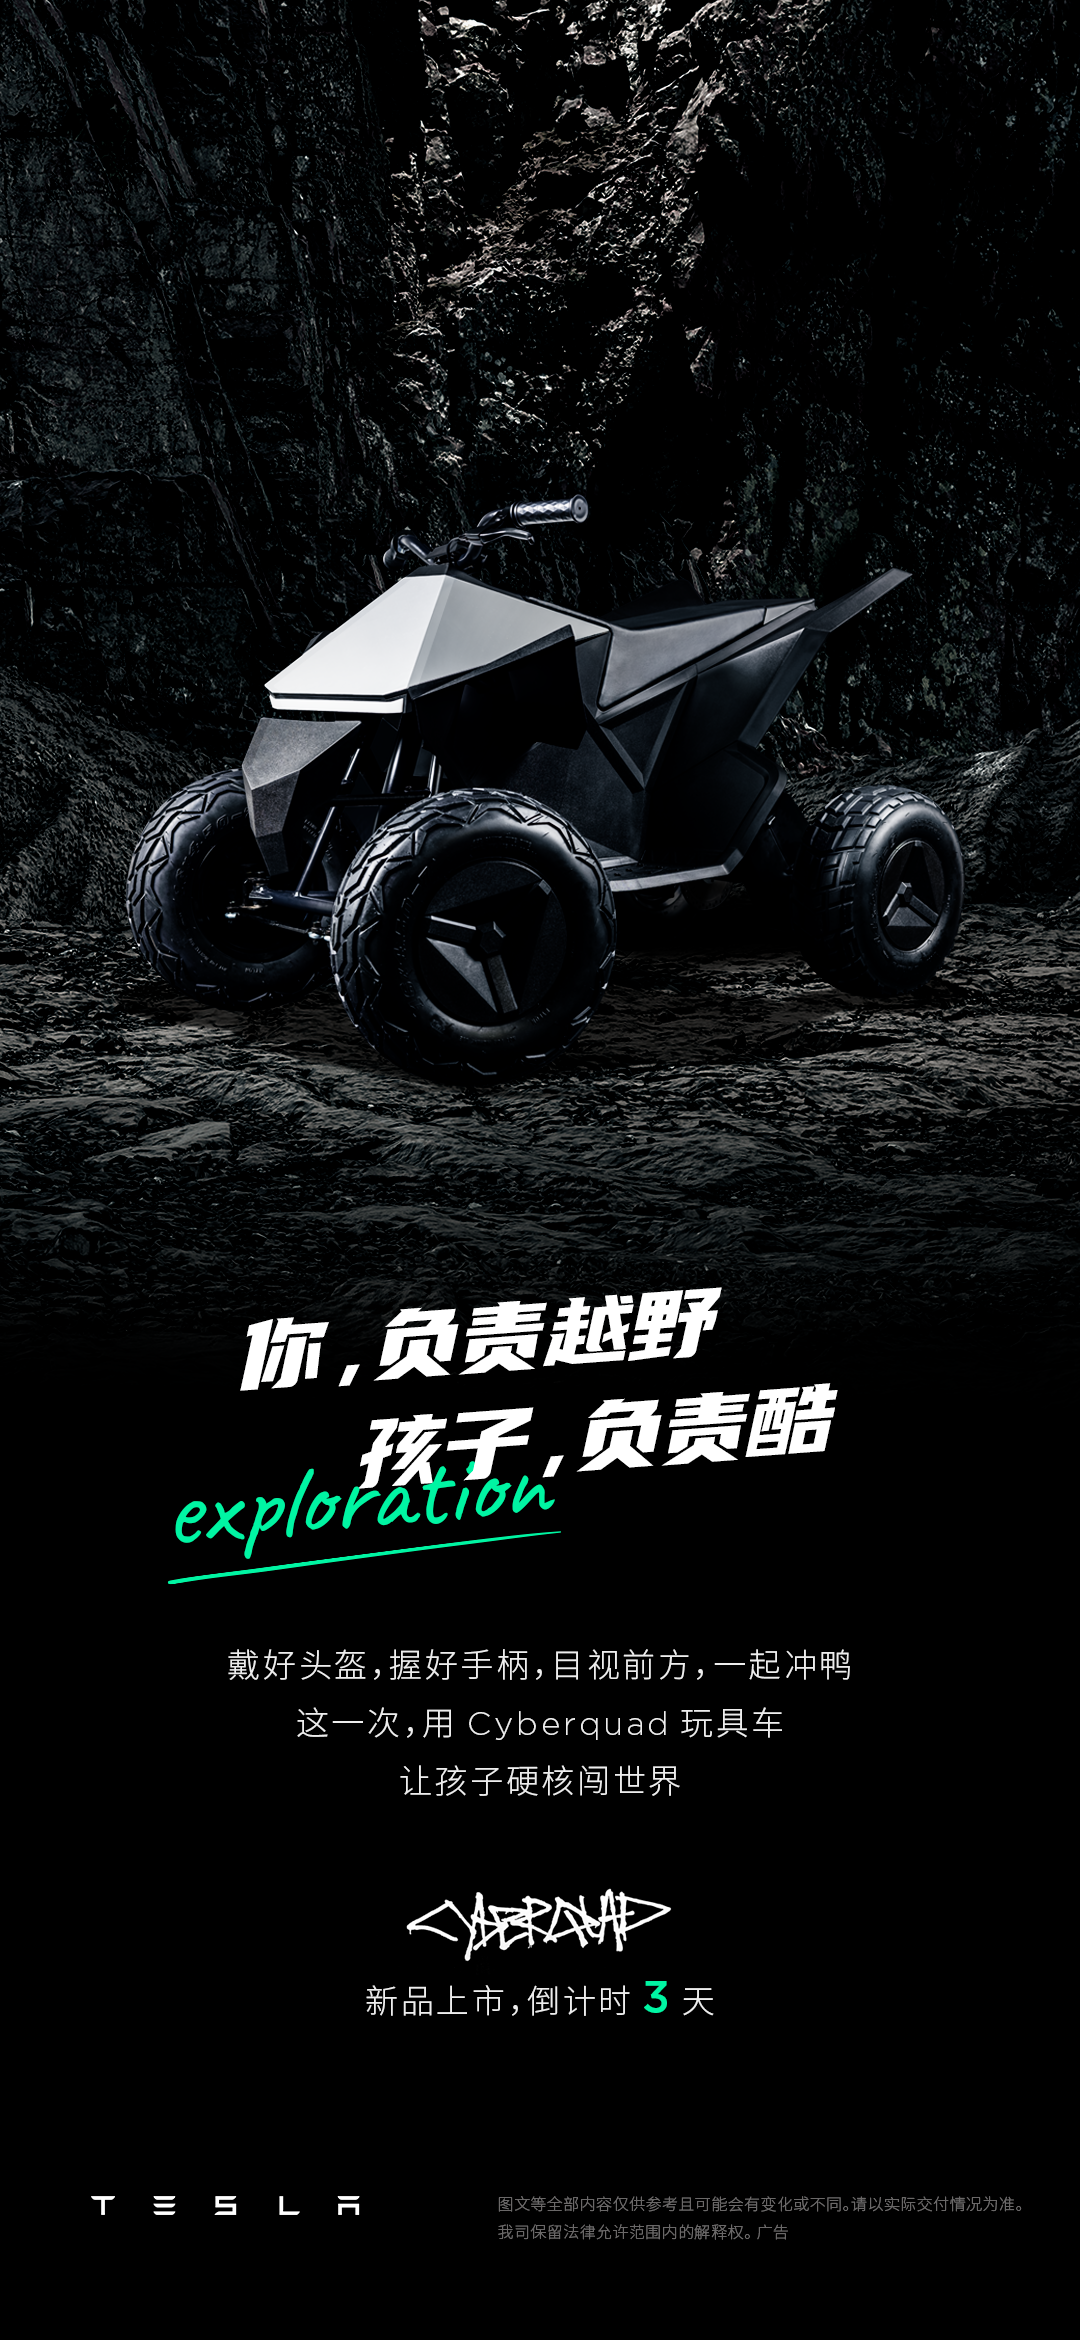 特斯拉儿童玩具车将在中国上市，这只A股一字涨停！发生了什么？